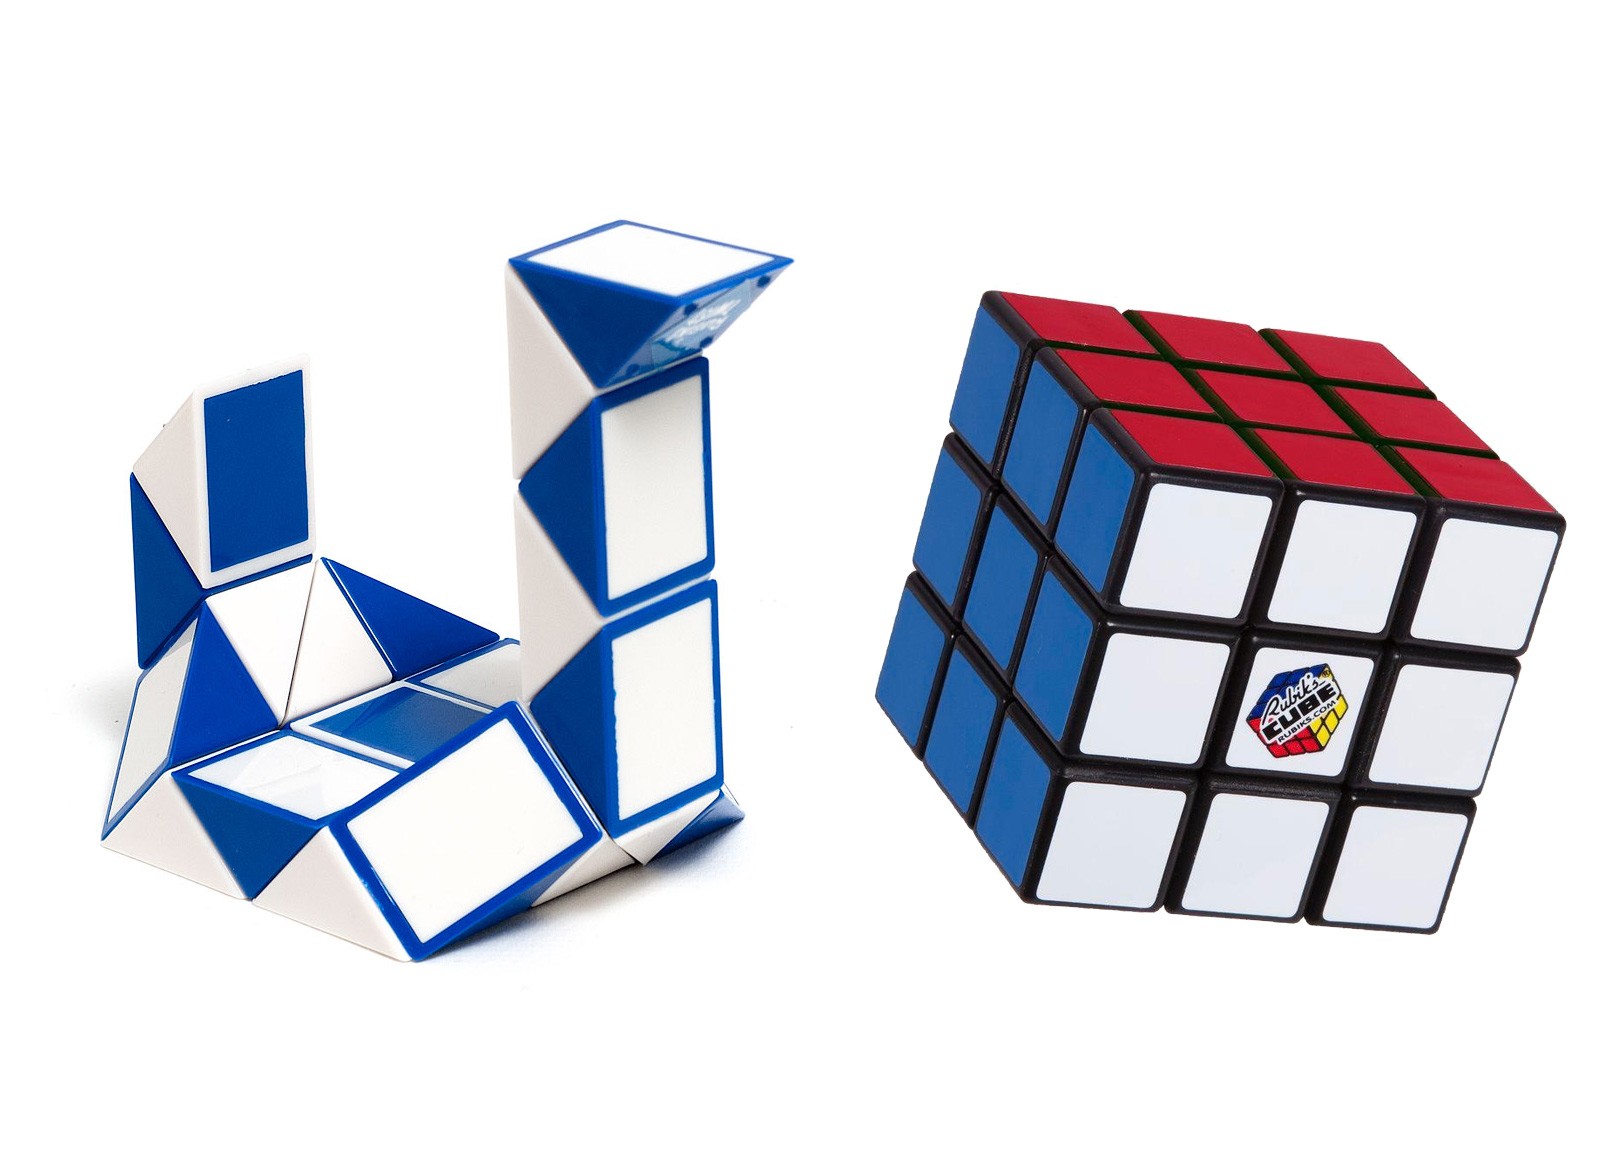 Cube duo. Головоломки Эрно Рубика. Змейка Рубика Rubik's Twist. Кубик Рубика Твист. Головоломки на основе кубика Рубика 3х3.